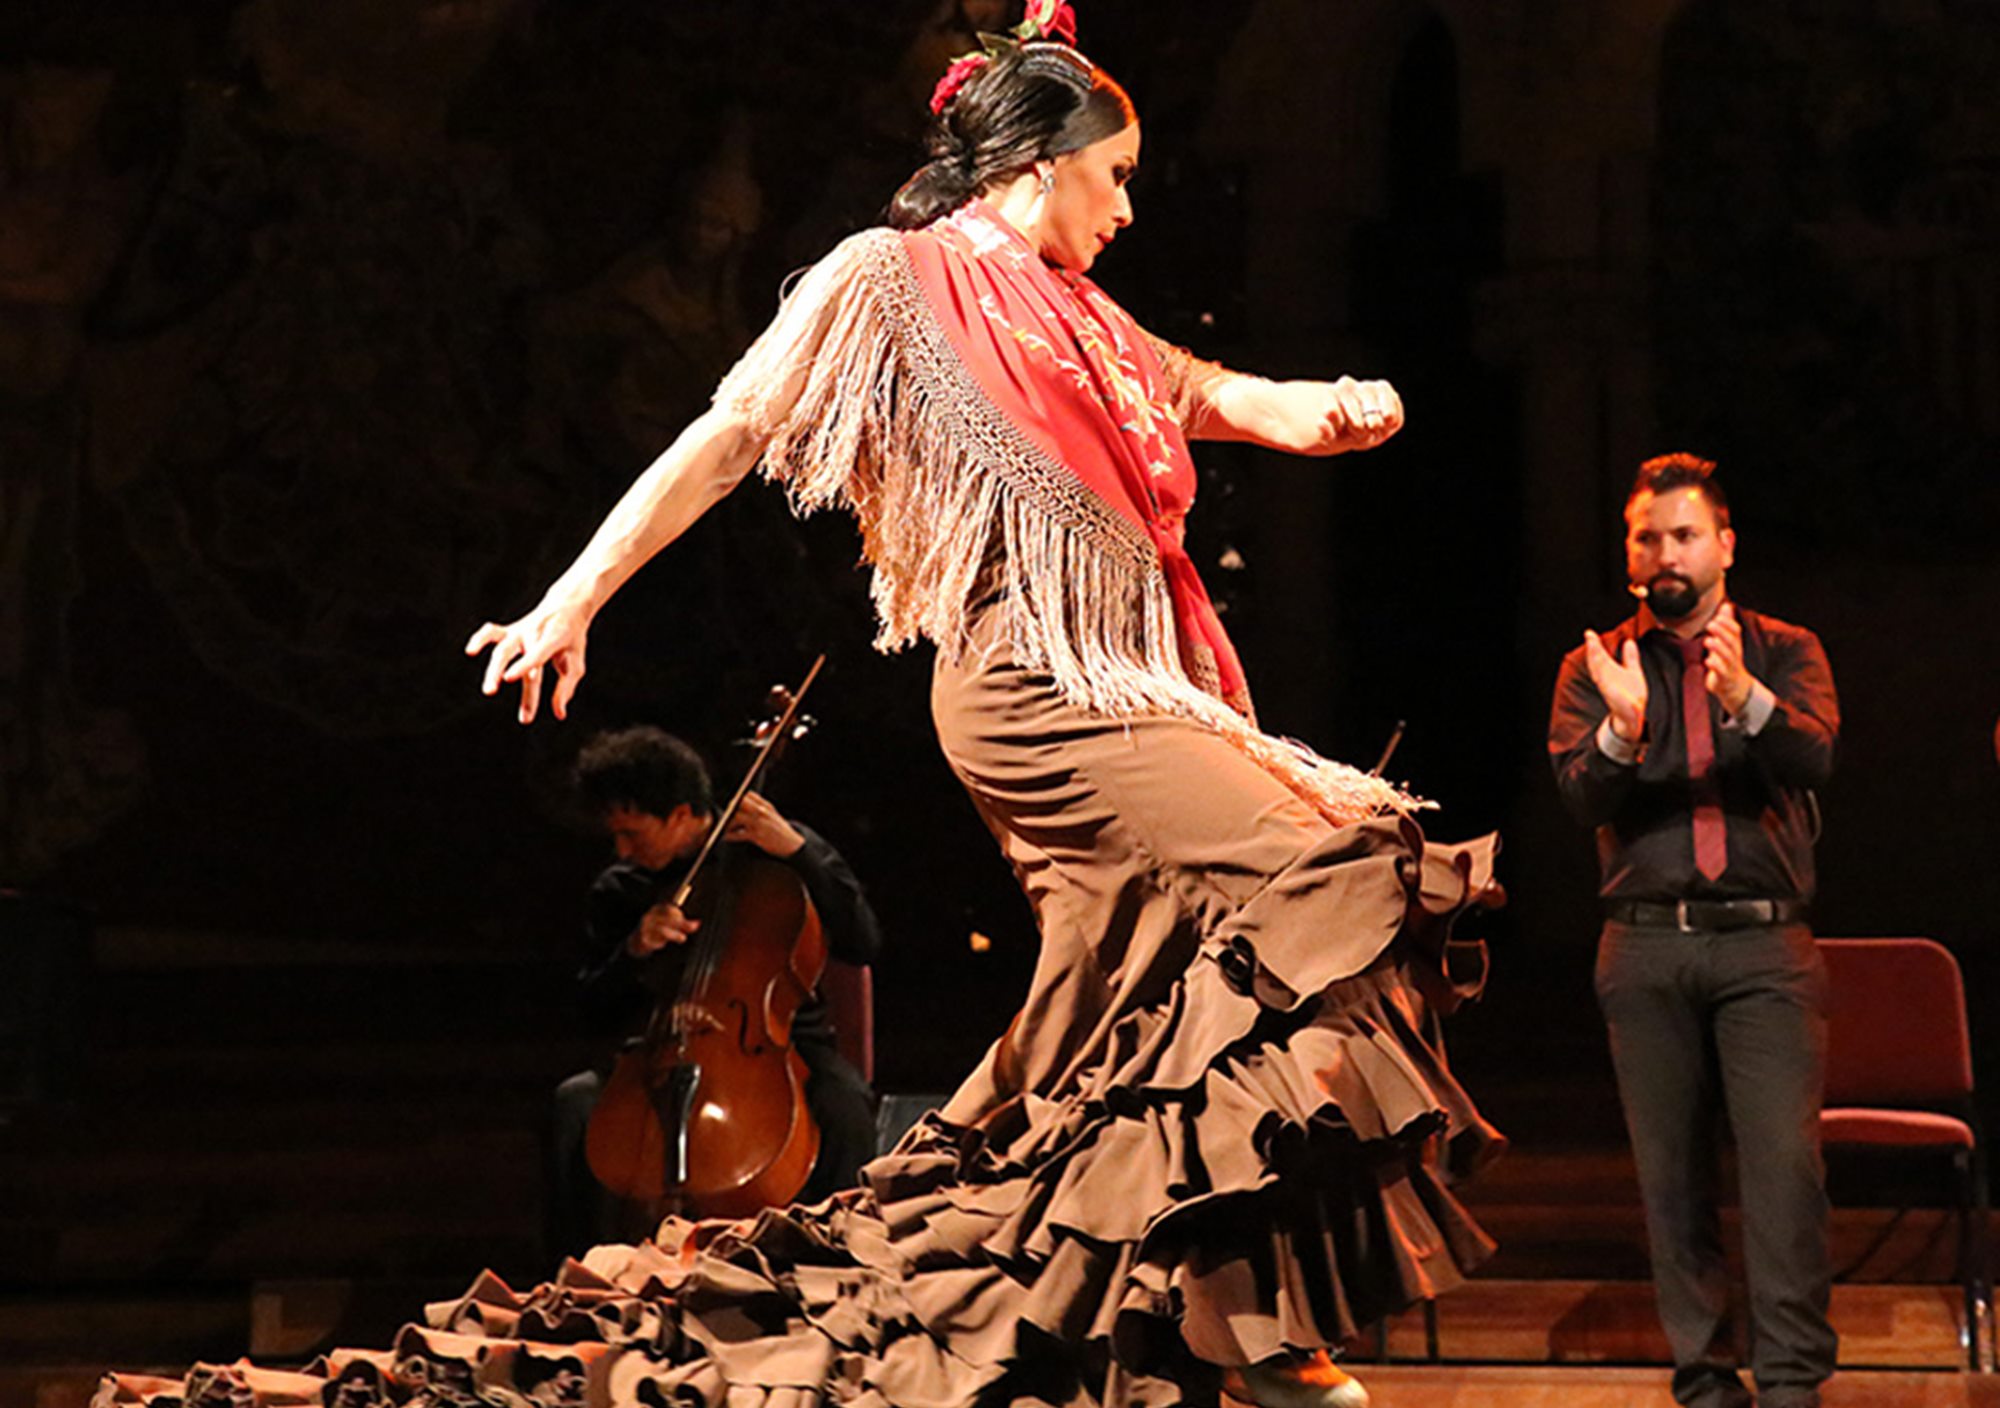 reservieren kaufen buchung tickets besucht Touren Fahrkarte karte karten Eintrittskarten Oper und Flamenco Show in Palau de la Música Catalana